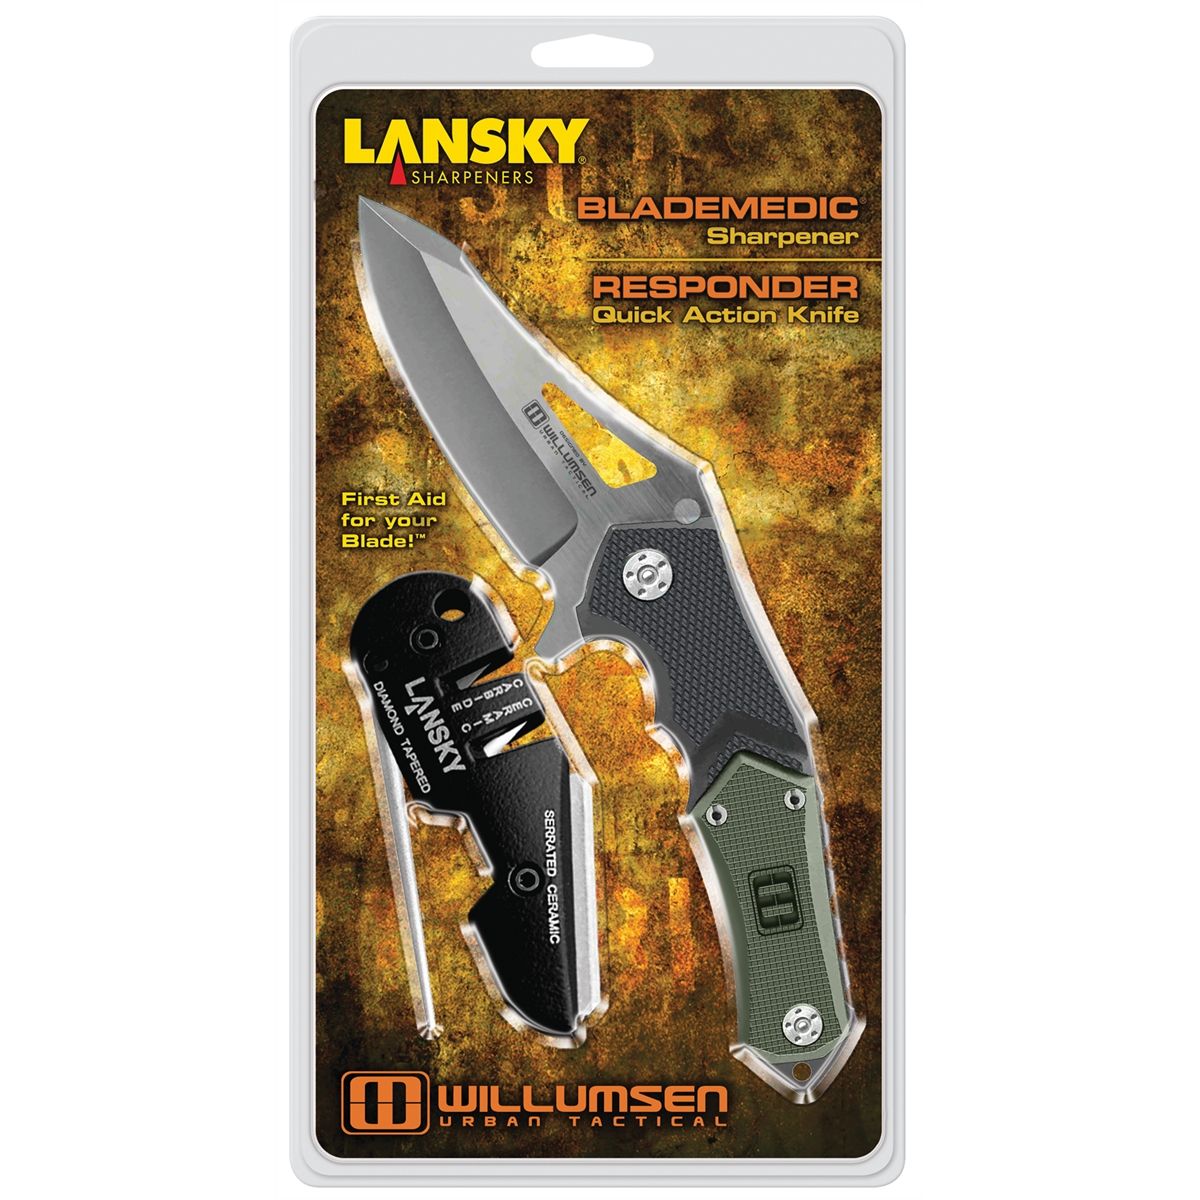 by Lansky Sharpeners, Knife,Responder/Blademedic Responder Knife/ Blademedic